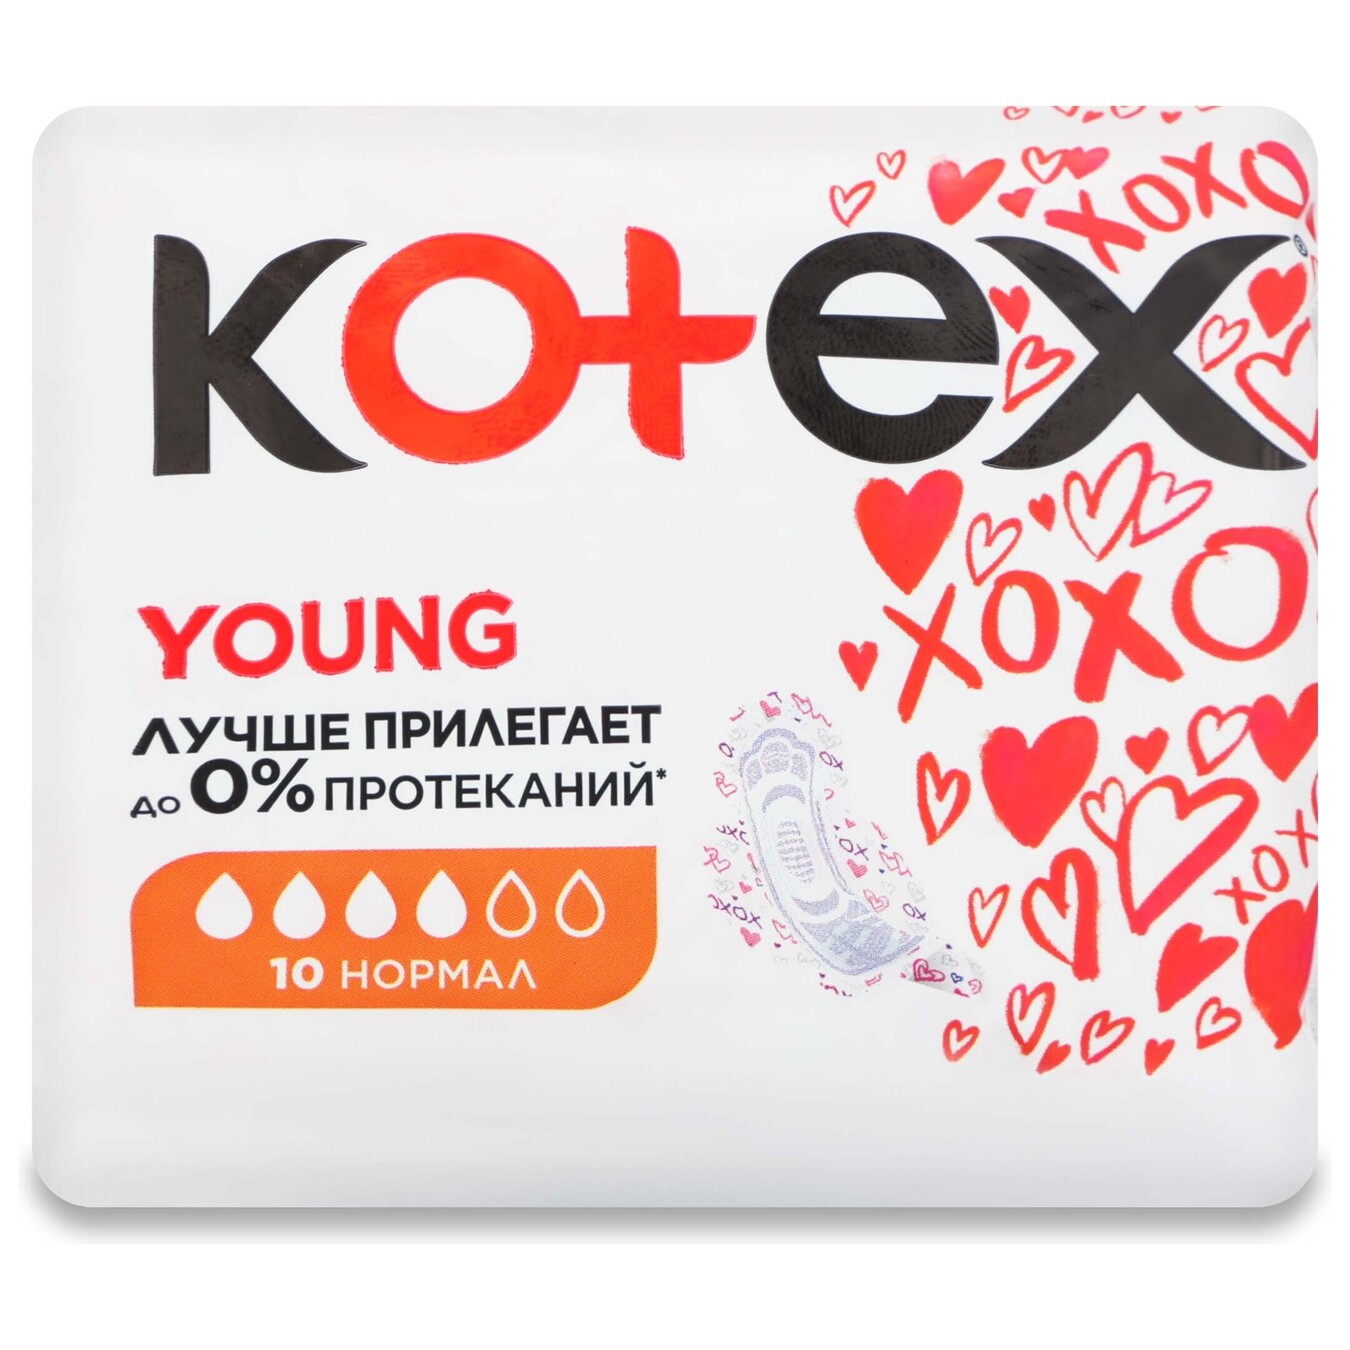 Прокладки Kotex Young Normal с крылышками 4 капли 10шт